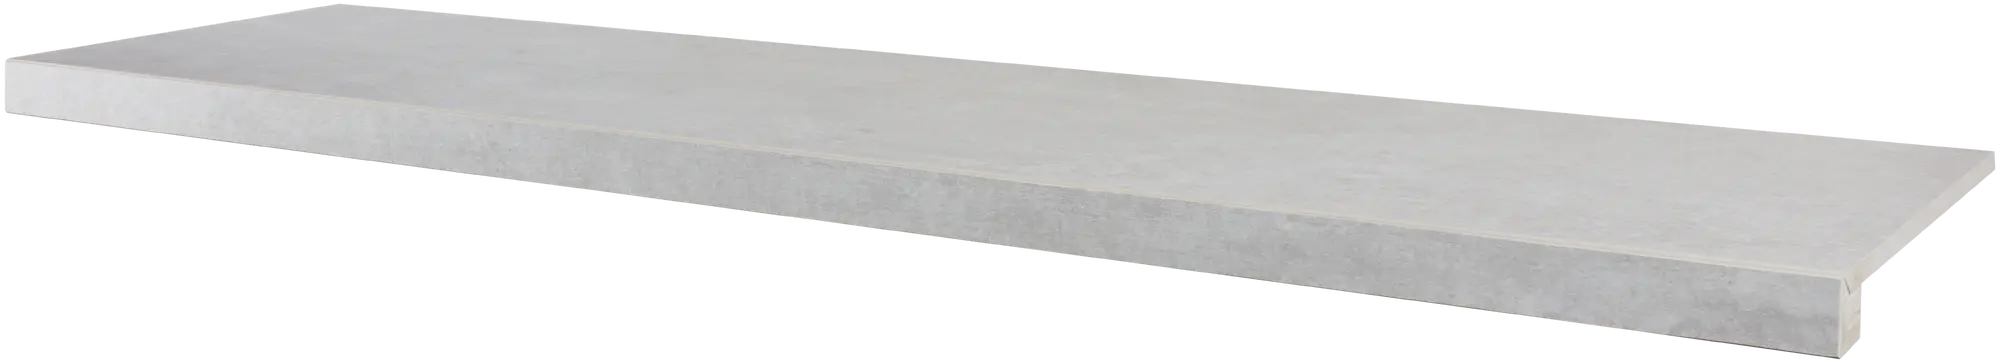 Peldaño de escalera porcelánico artens martins efecto cemento perla 30x120 cm